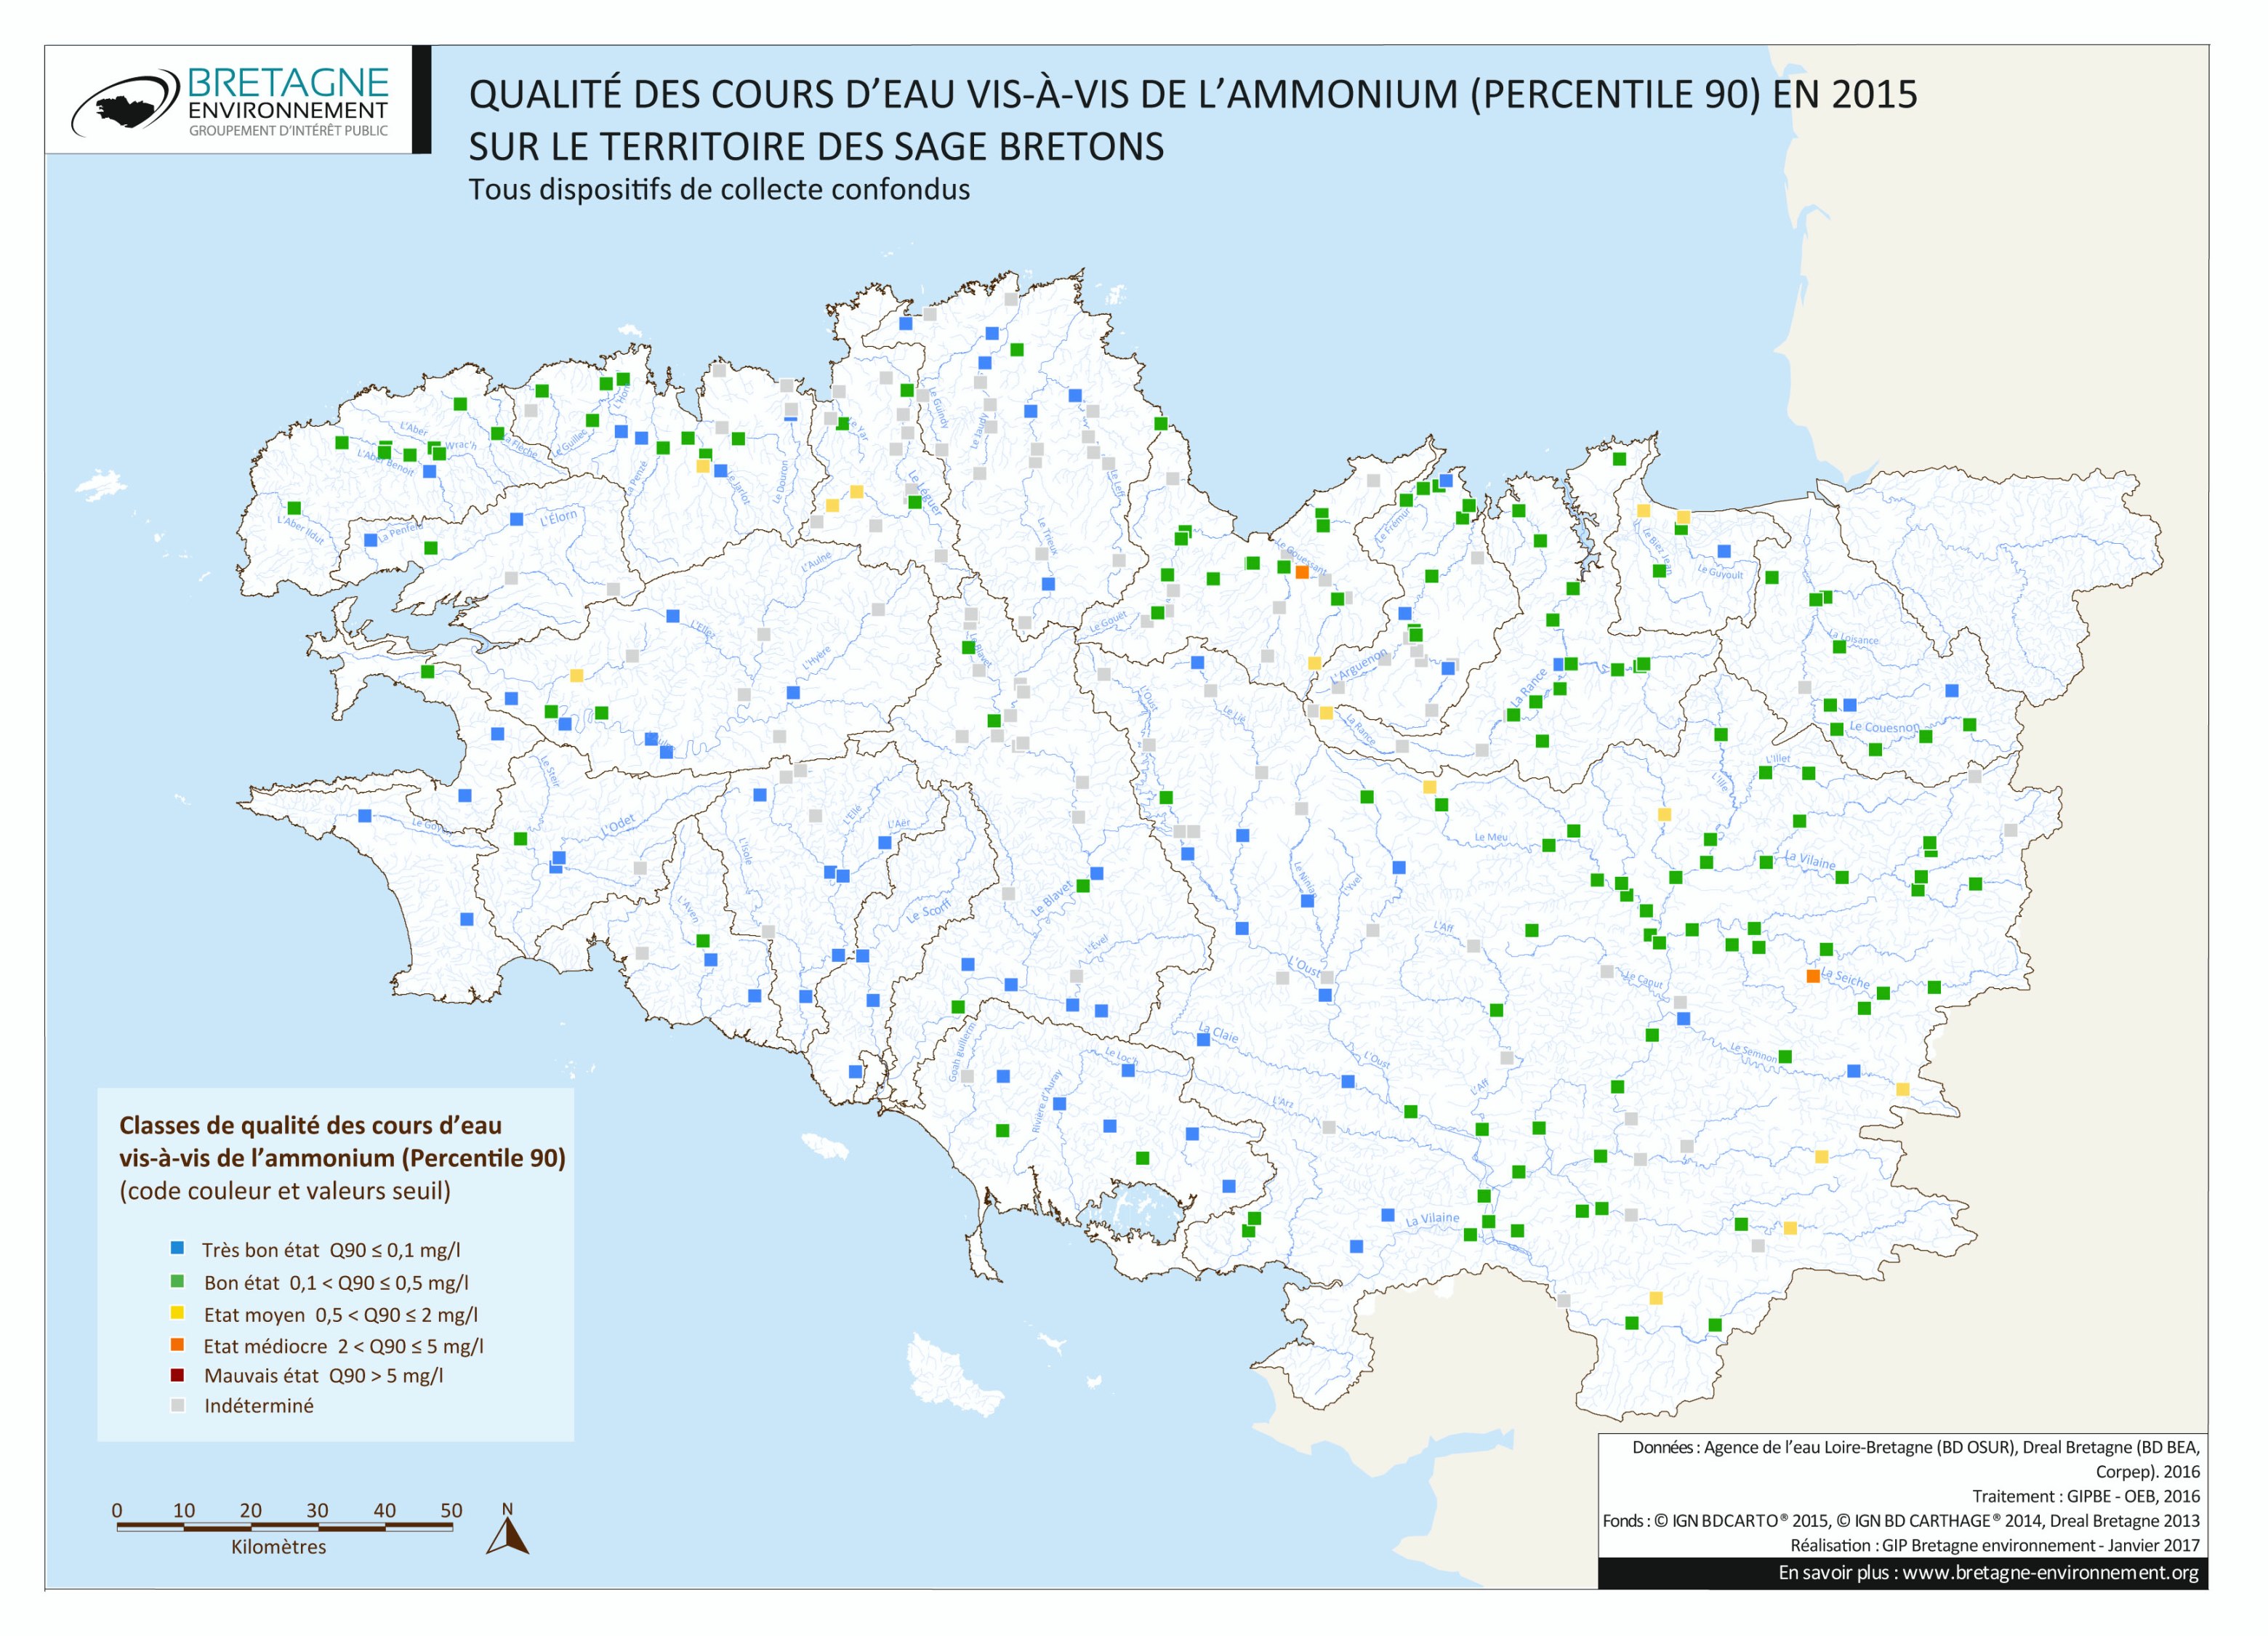 Qualité des cours d'eau bretons vis-à-vis de l'ammonium (Q90) en 2015